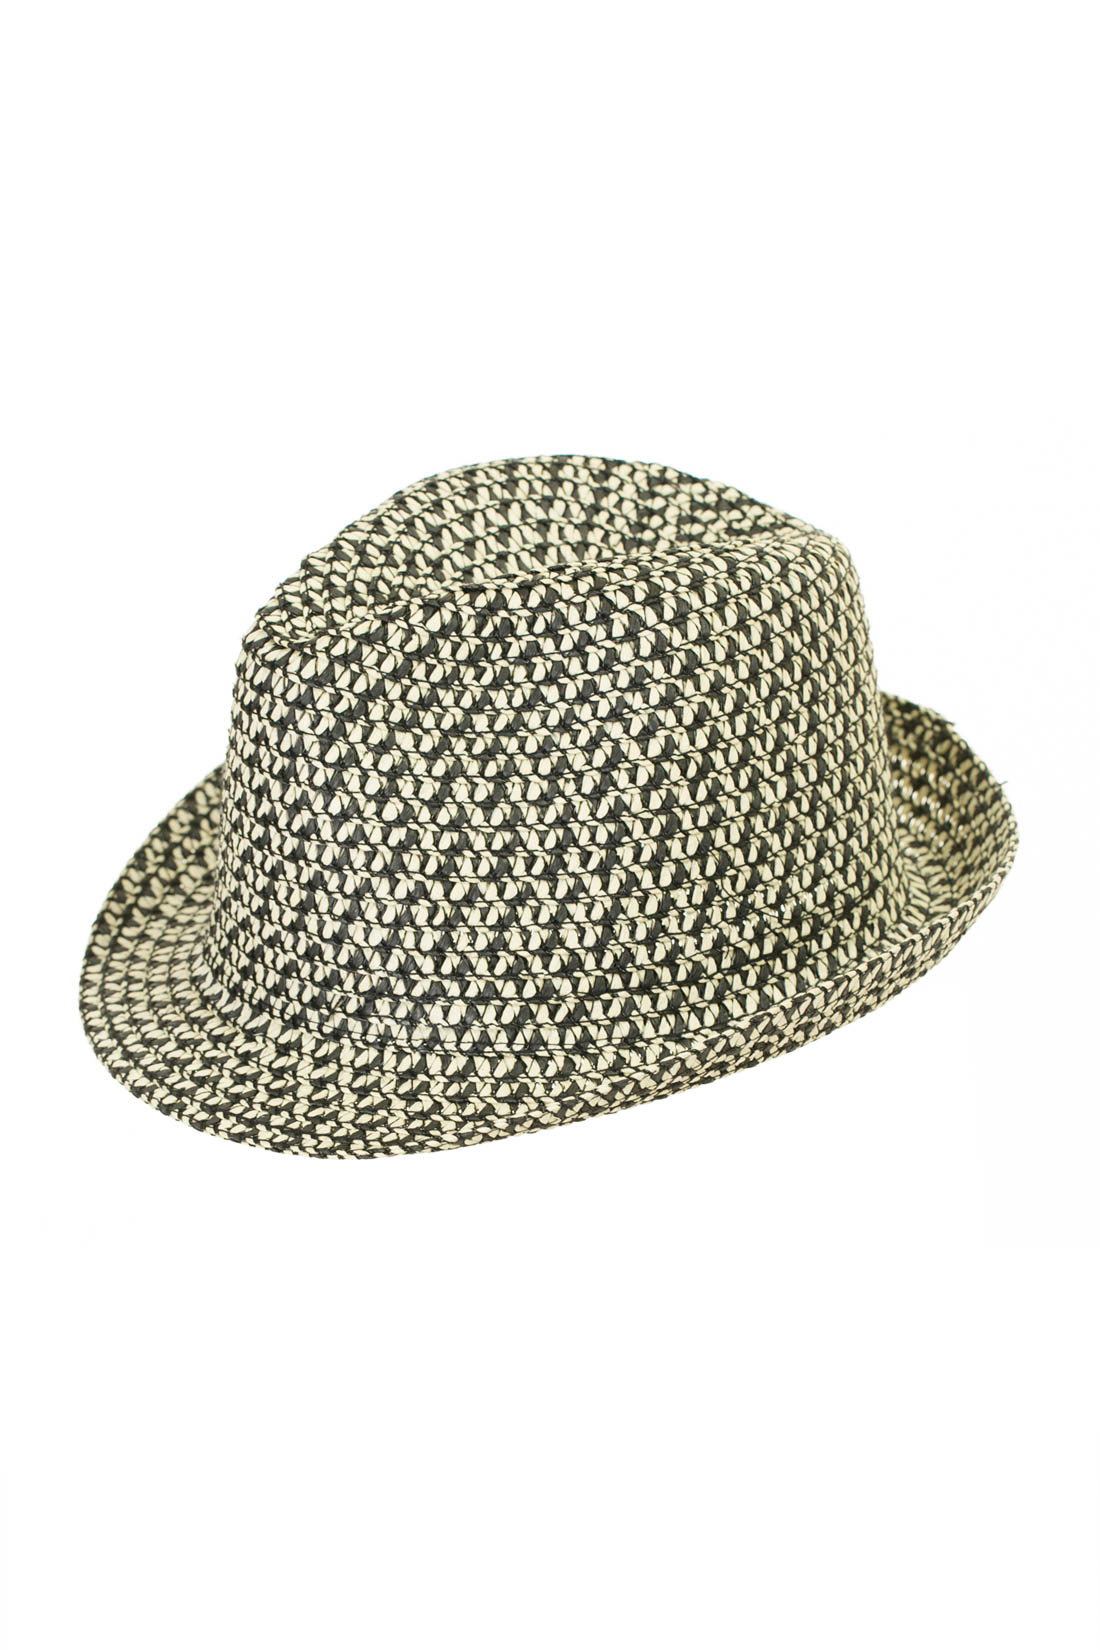 Двухцветная шляпа-федора (арт. baon B847001), размер 56-58